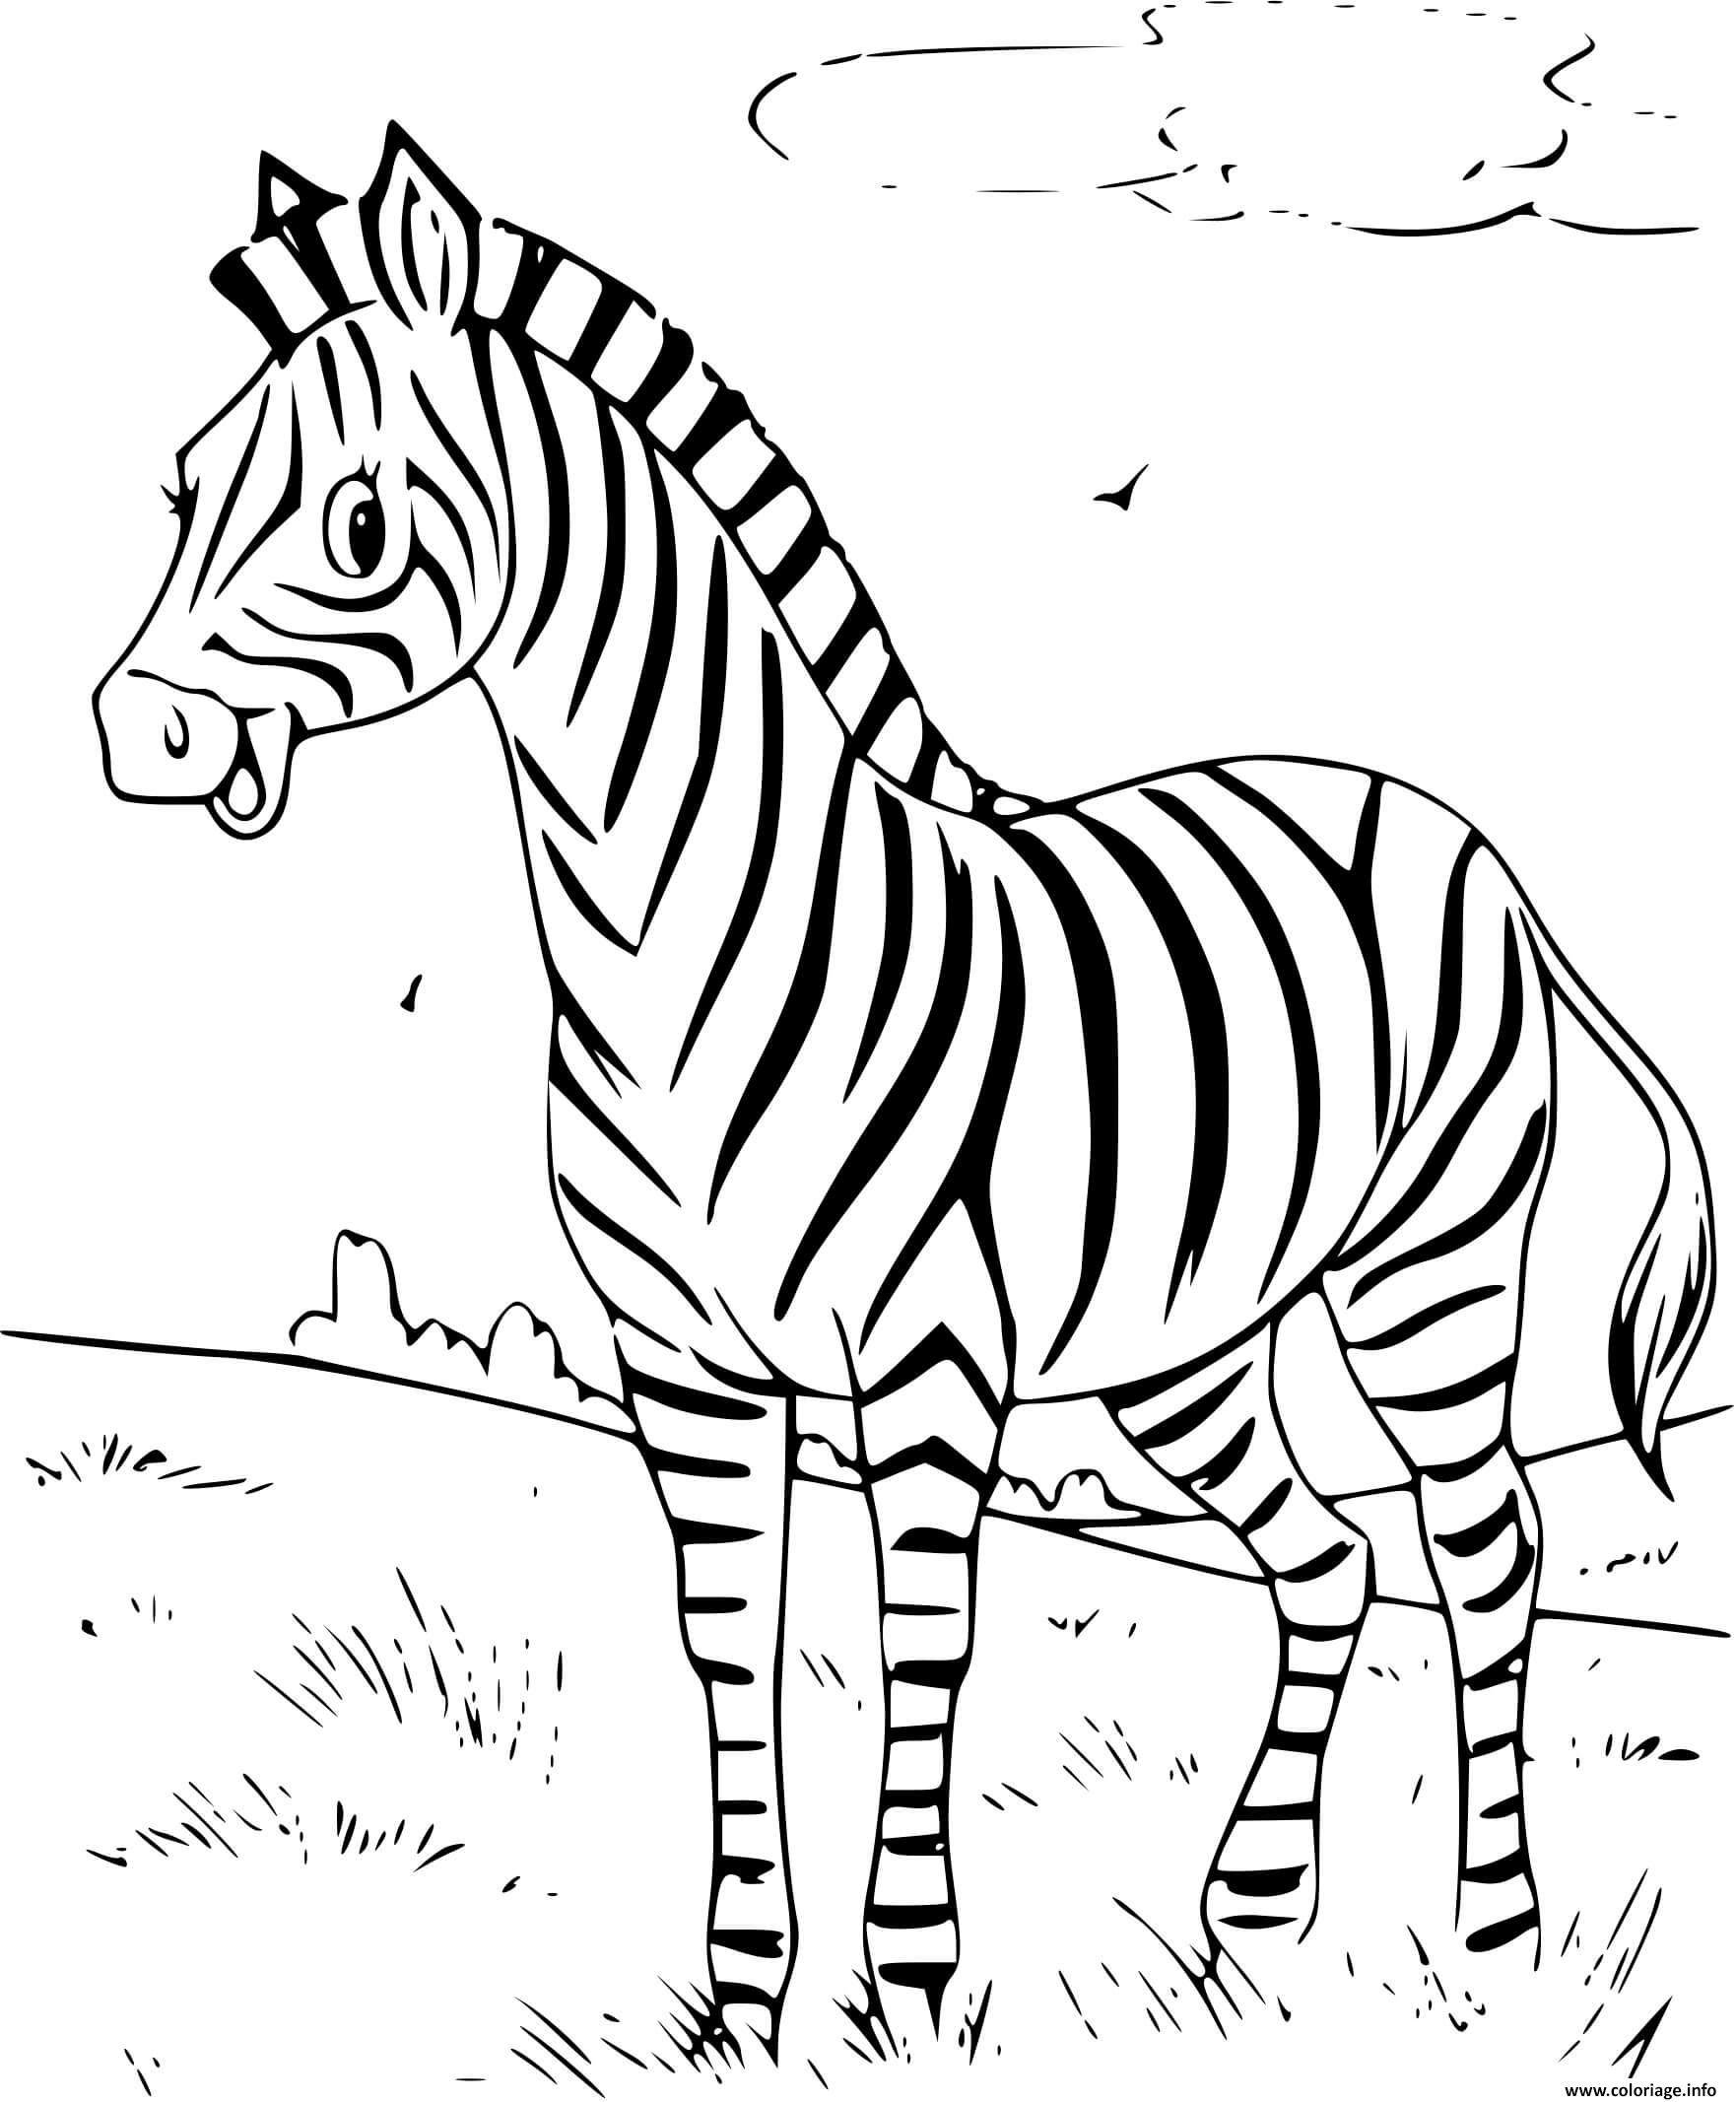 Dessin zebre souriant avec des bandes de rayures noires et blanches Coloriage Gratuit à Imprimer